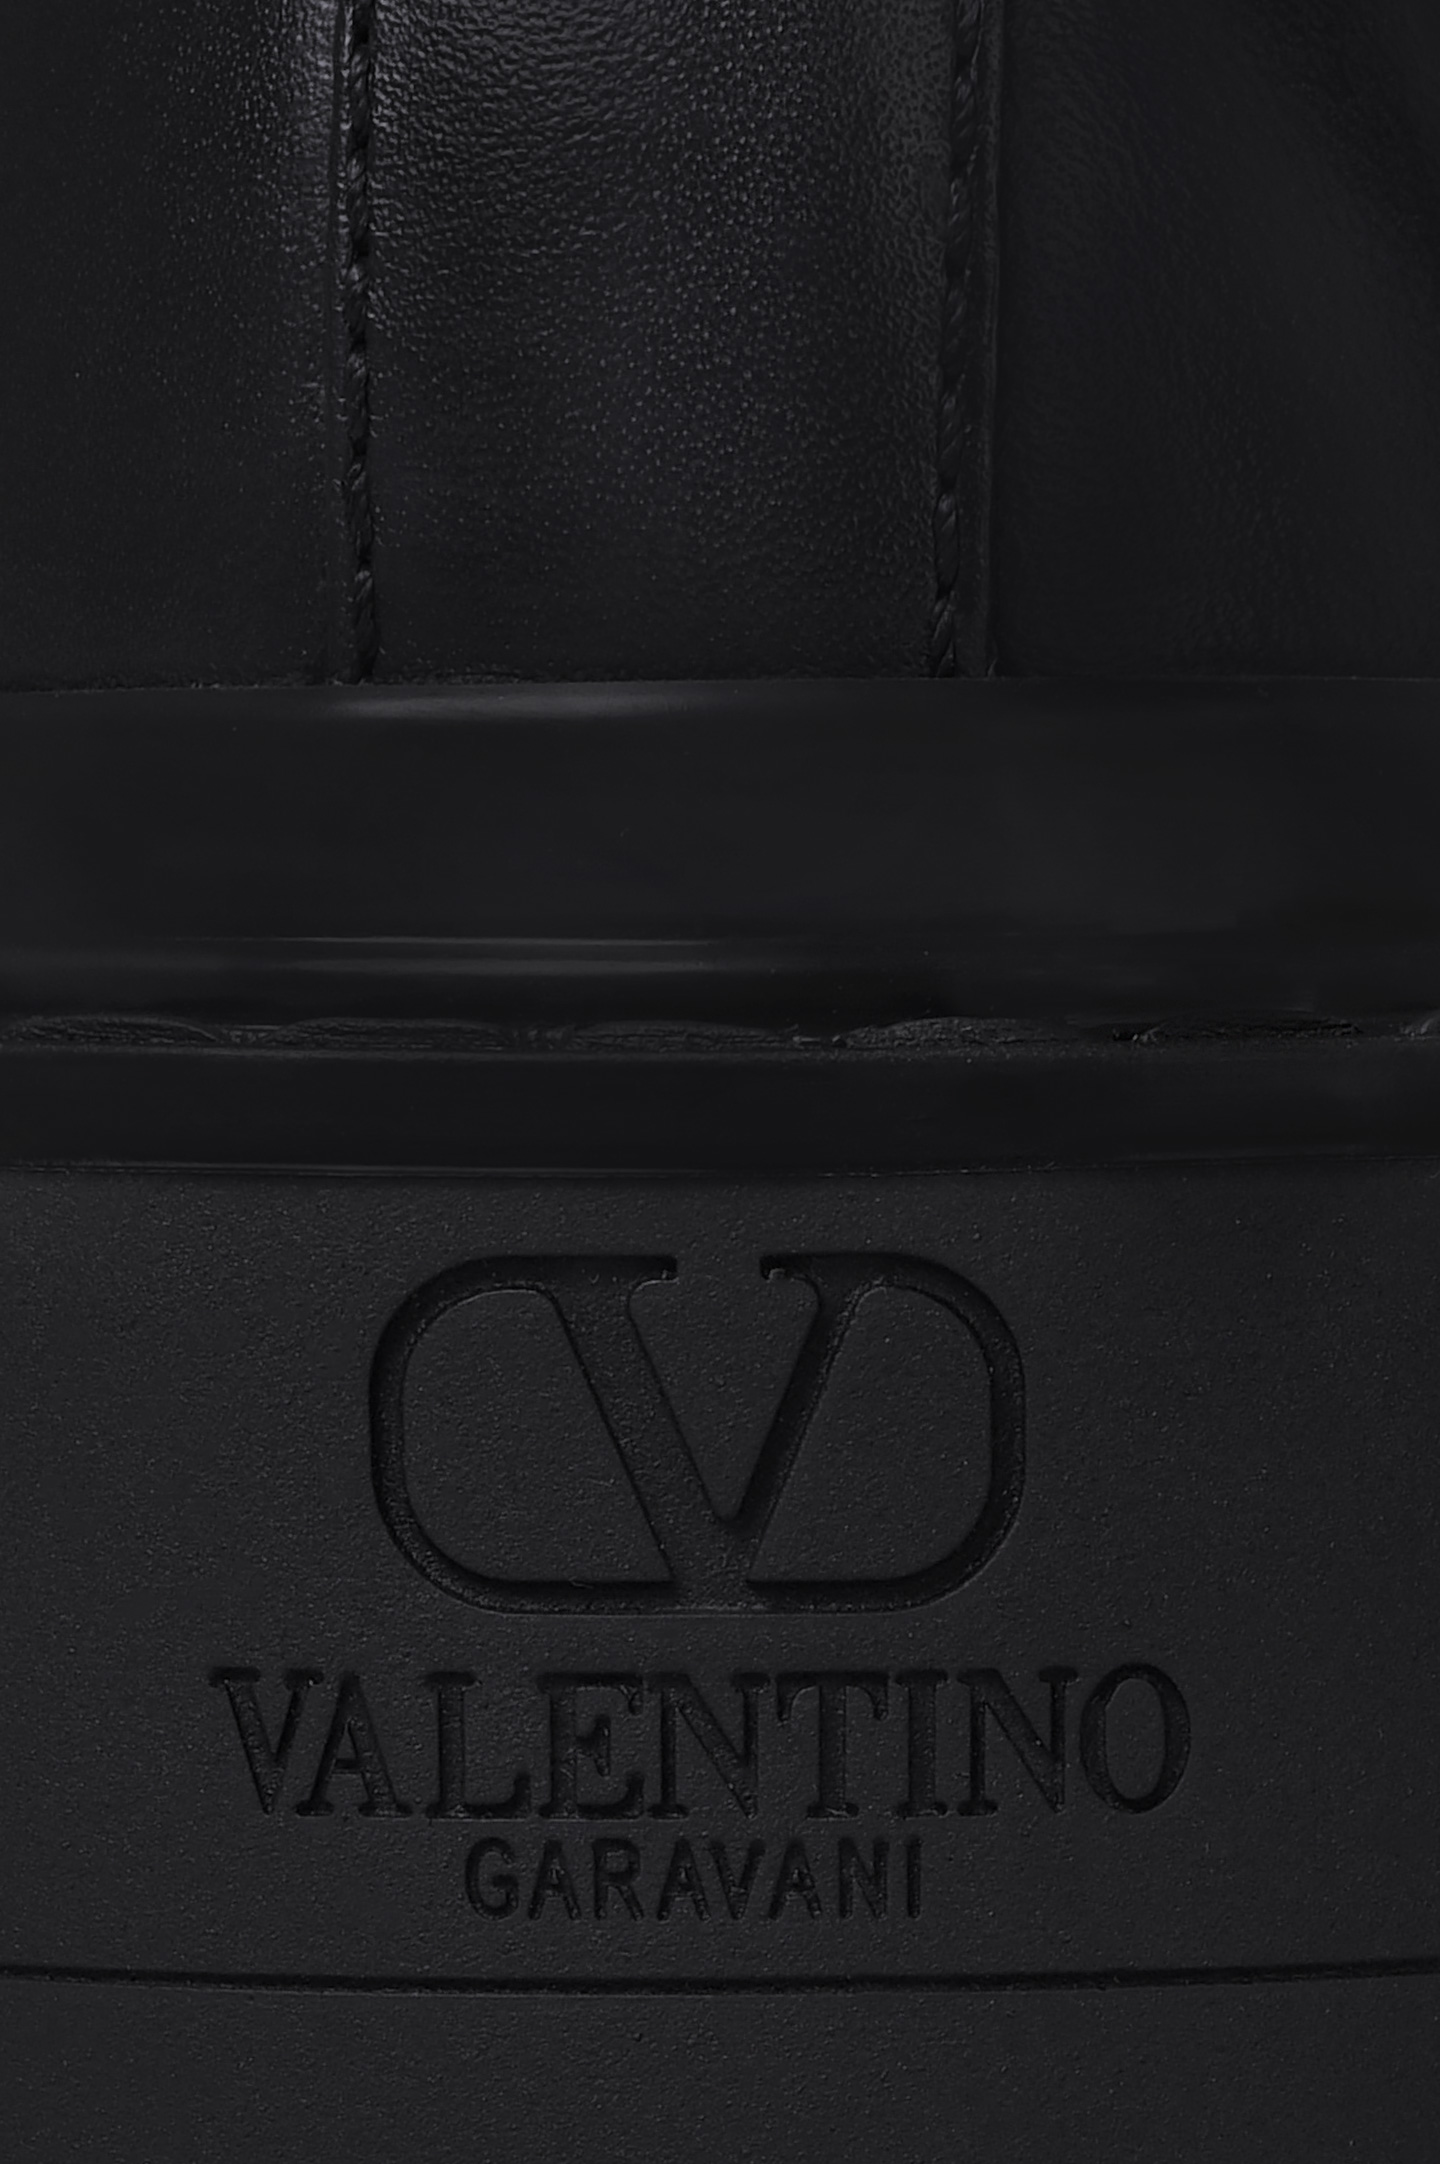 Ботинки VALENTINO GARAVANI WW2S0CJ3FYP, цвет: Черный, Женский